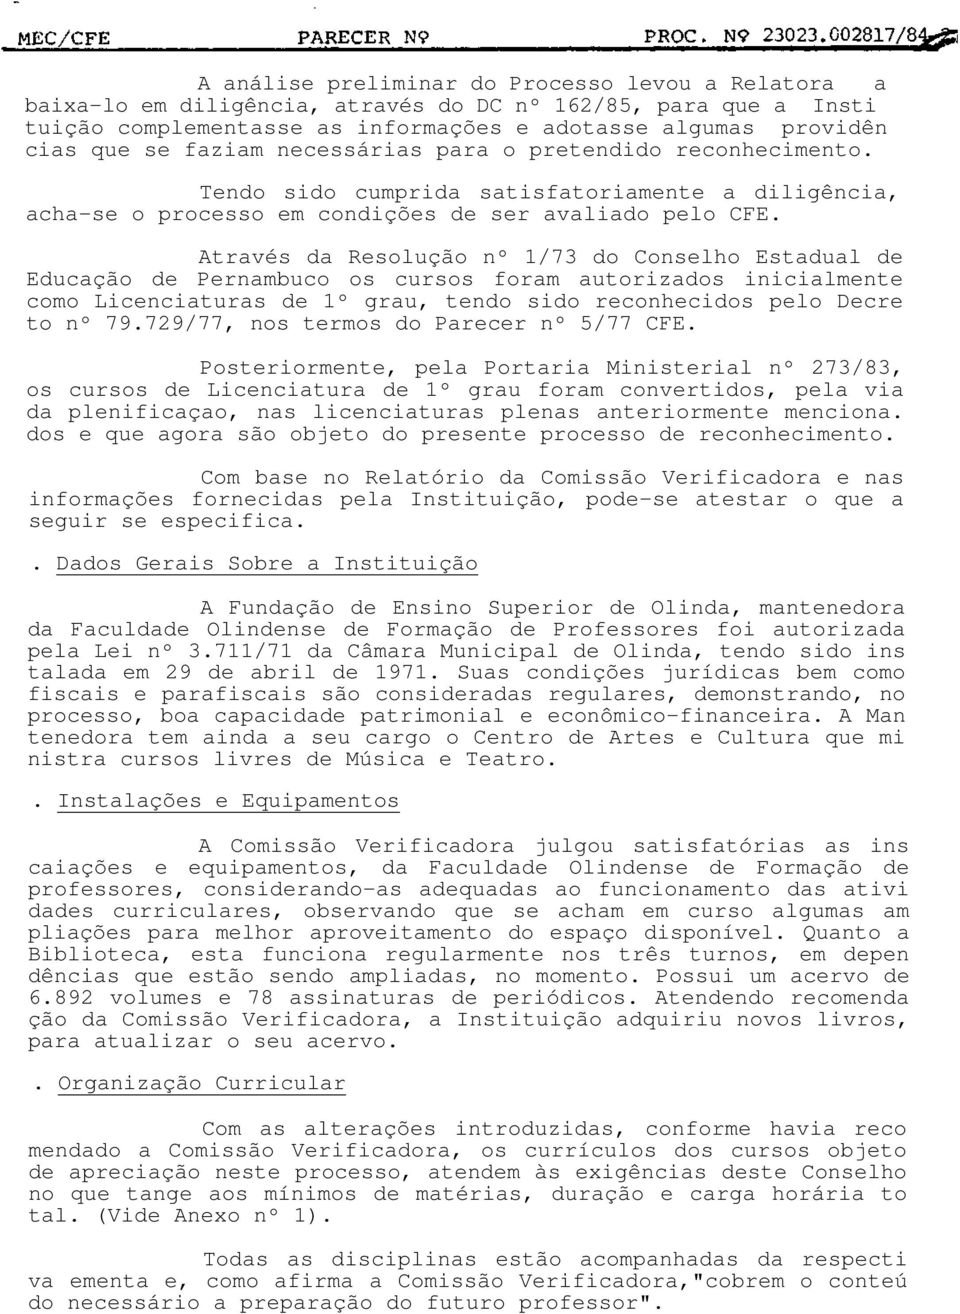 Através da Resolução nº 1/73 do Conselho Estadual de Educação de Pernambuco os cursos foram autorizados inicialmente como Licenciaturas de 1º grau, tendo sido reconhecidos pelo Decre to nº 79.